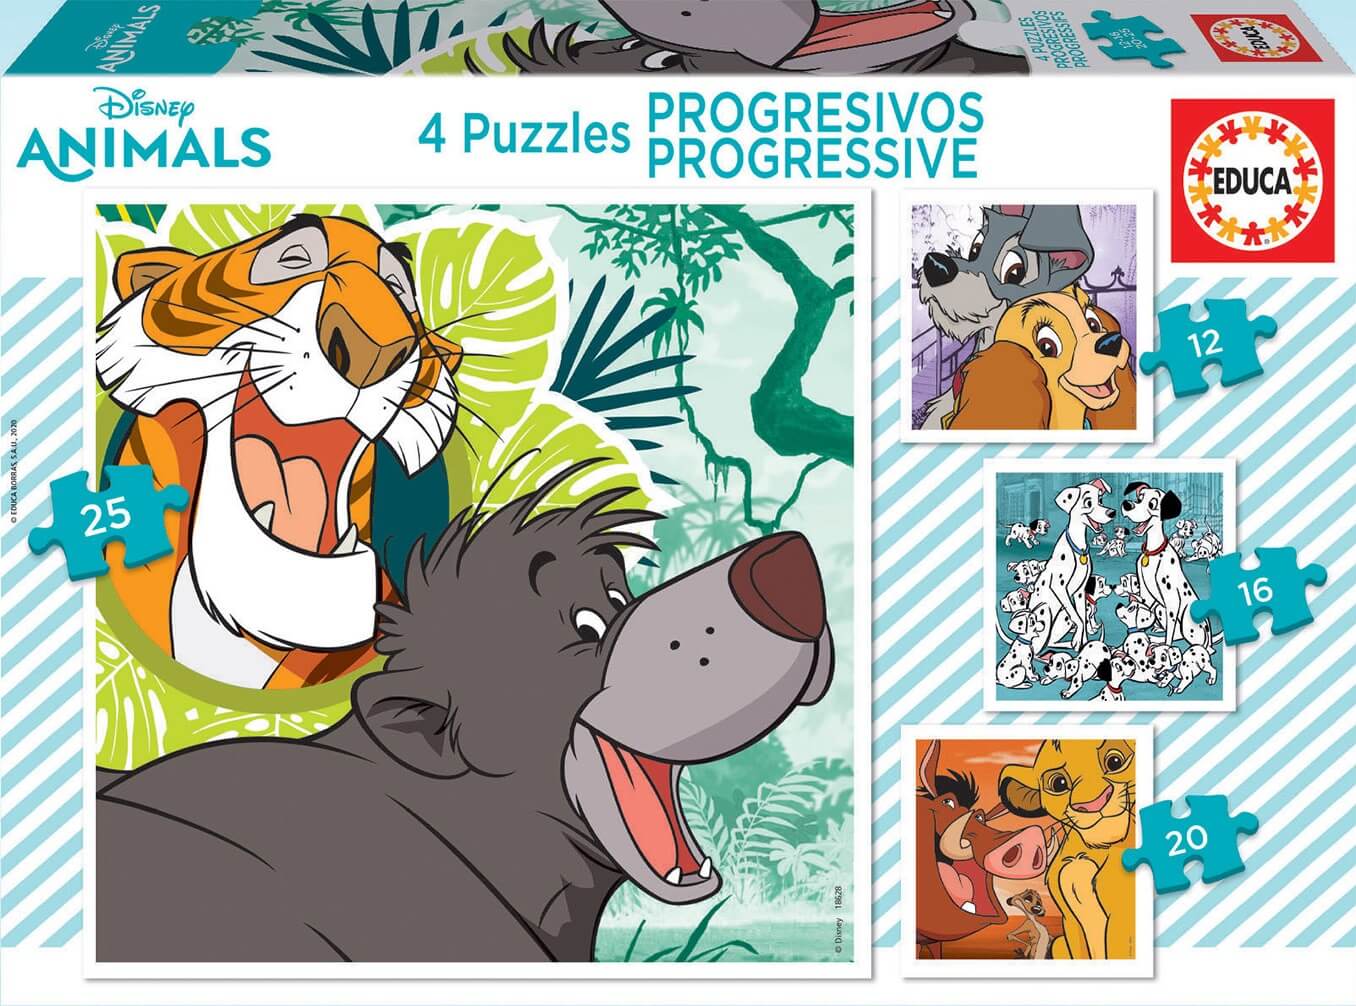 Progresivo 12-16-20-25 Animales Disney